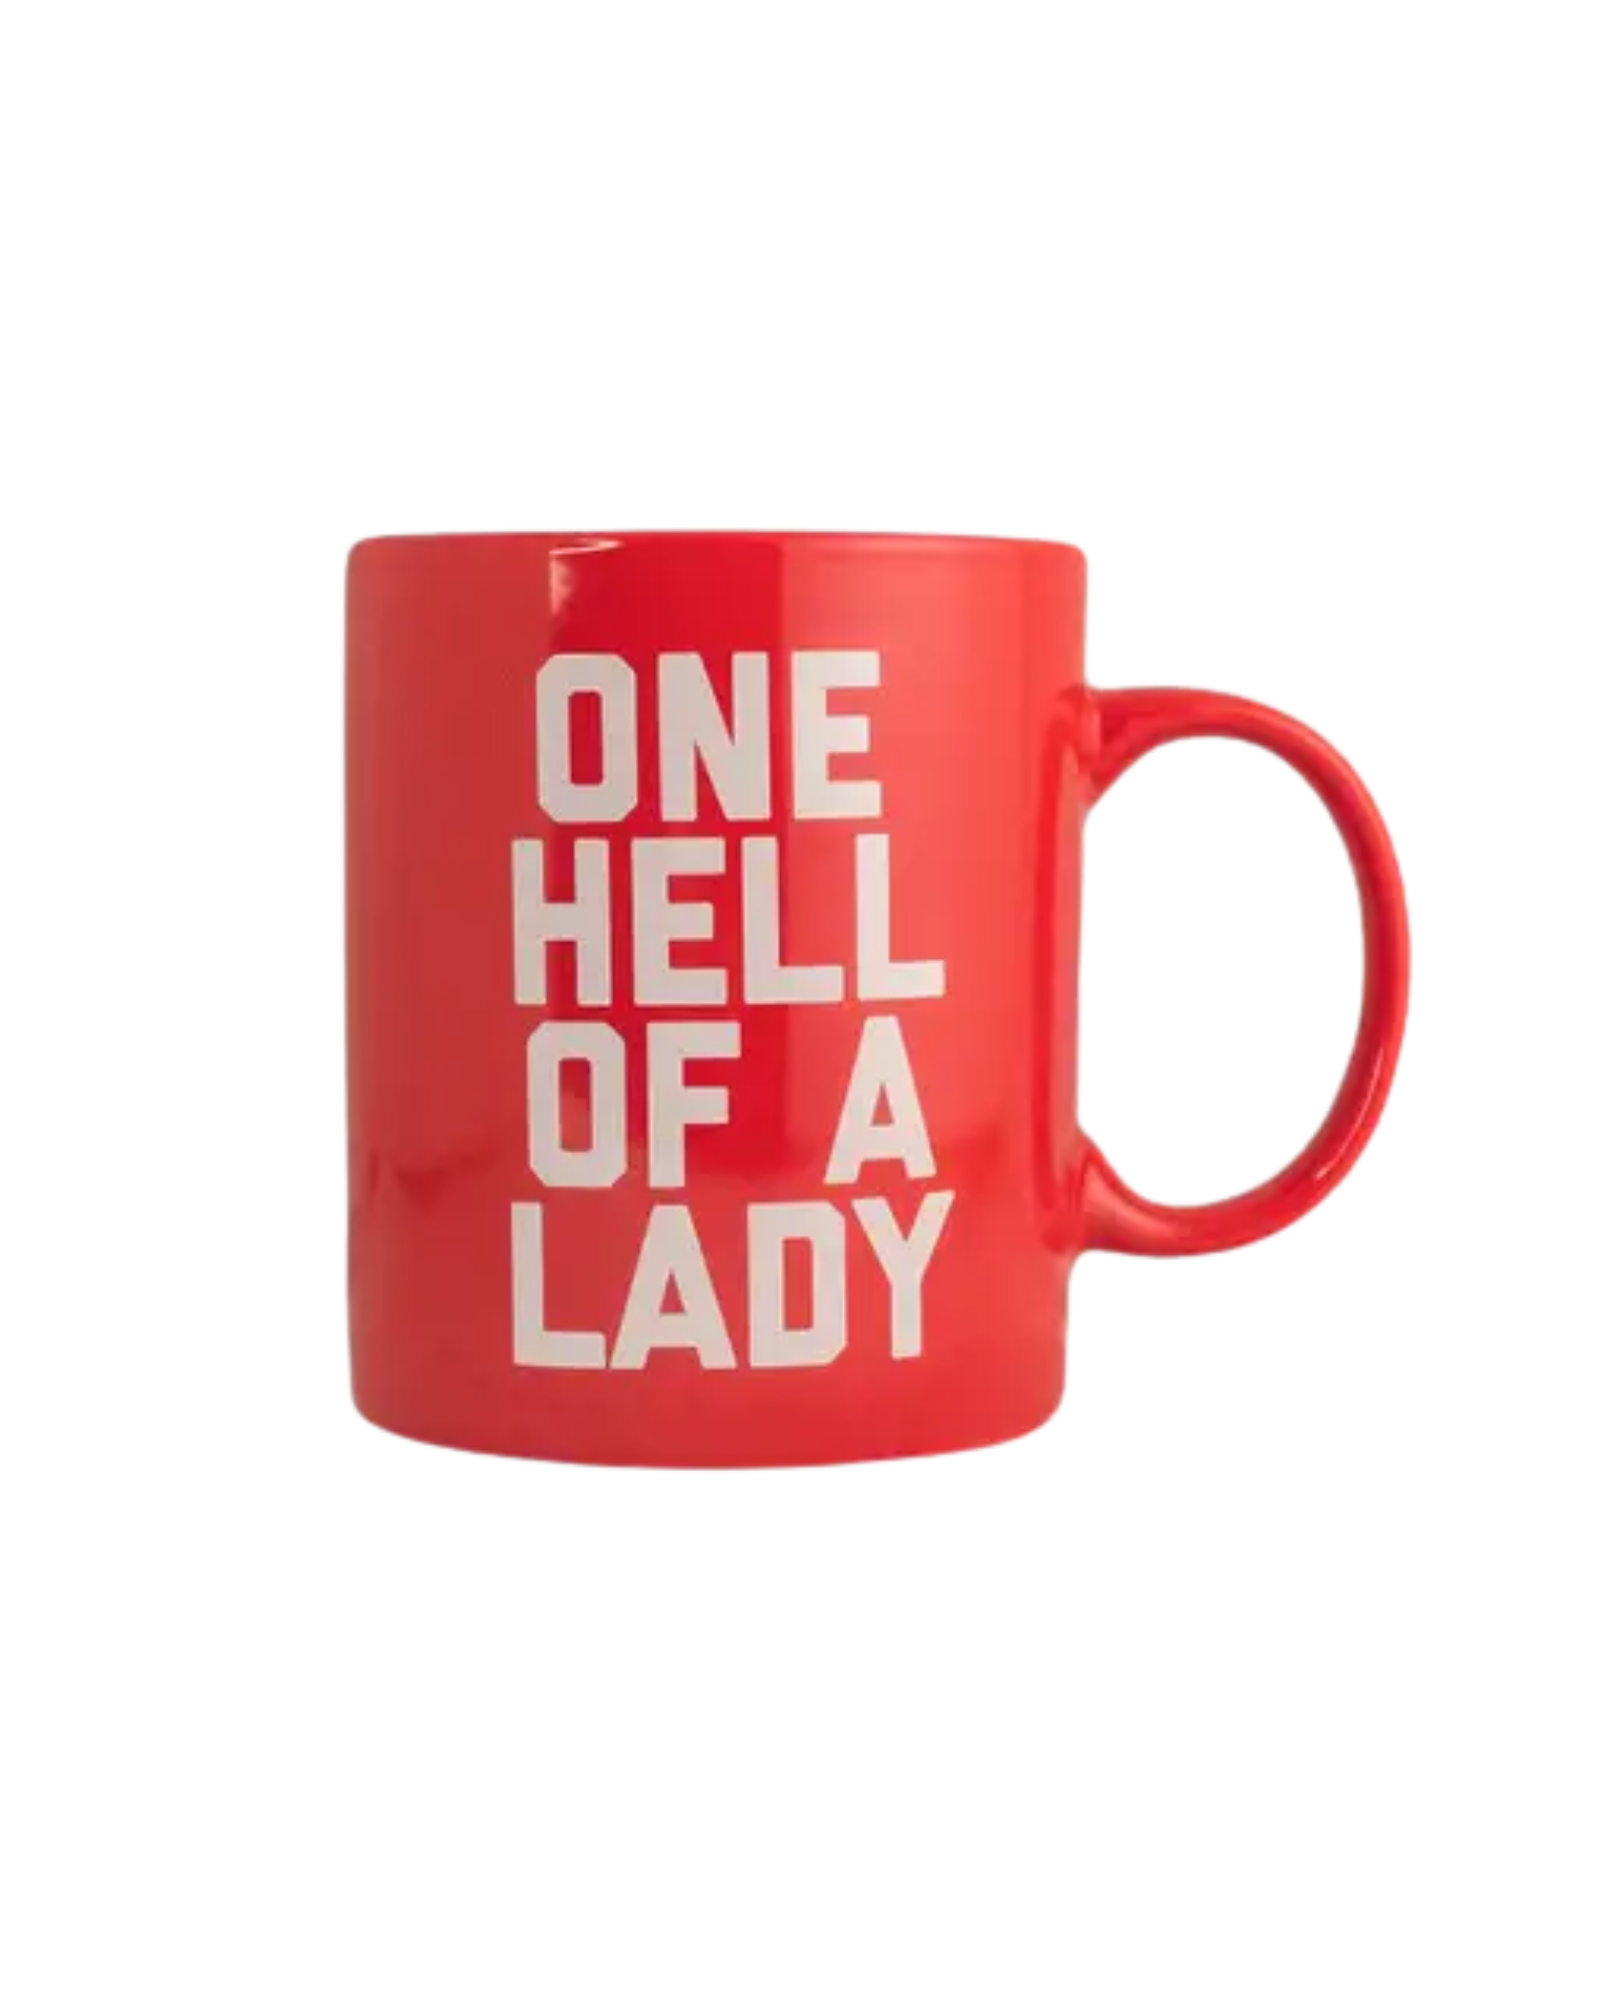 One Hell of a Lady Mug